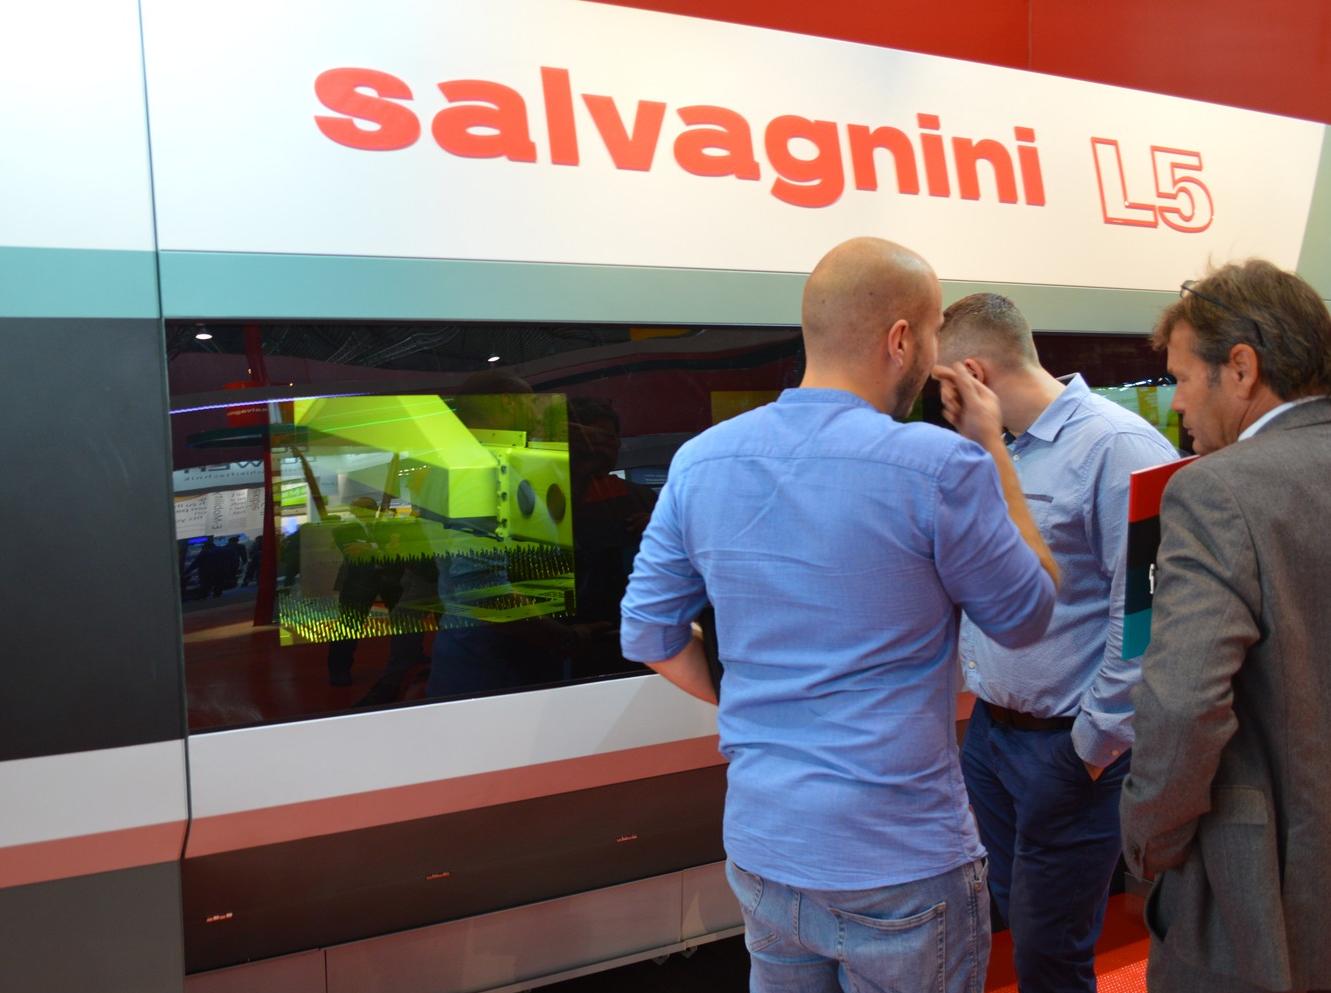 6 kW Laserleistung bietet die neue Laserquelle in der Faserlasermaschine L5 von Salvagnini